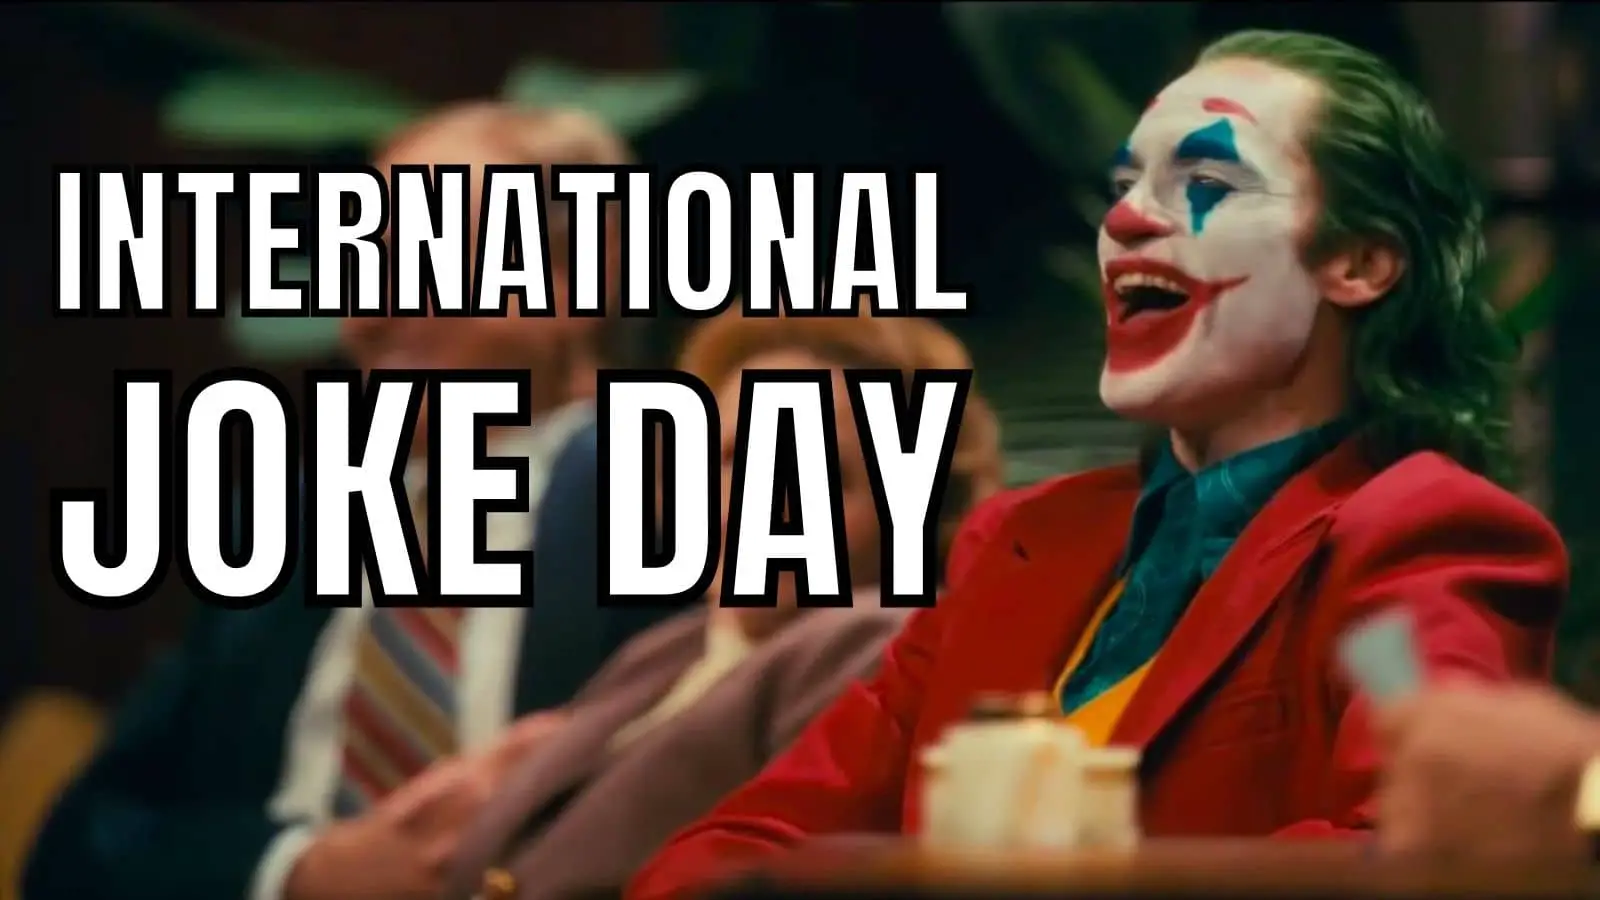 International Joke Day on July 1